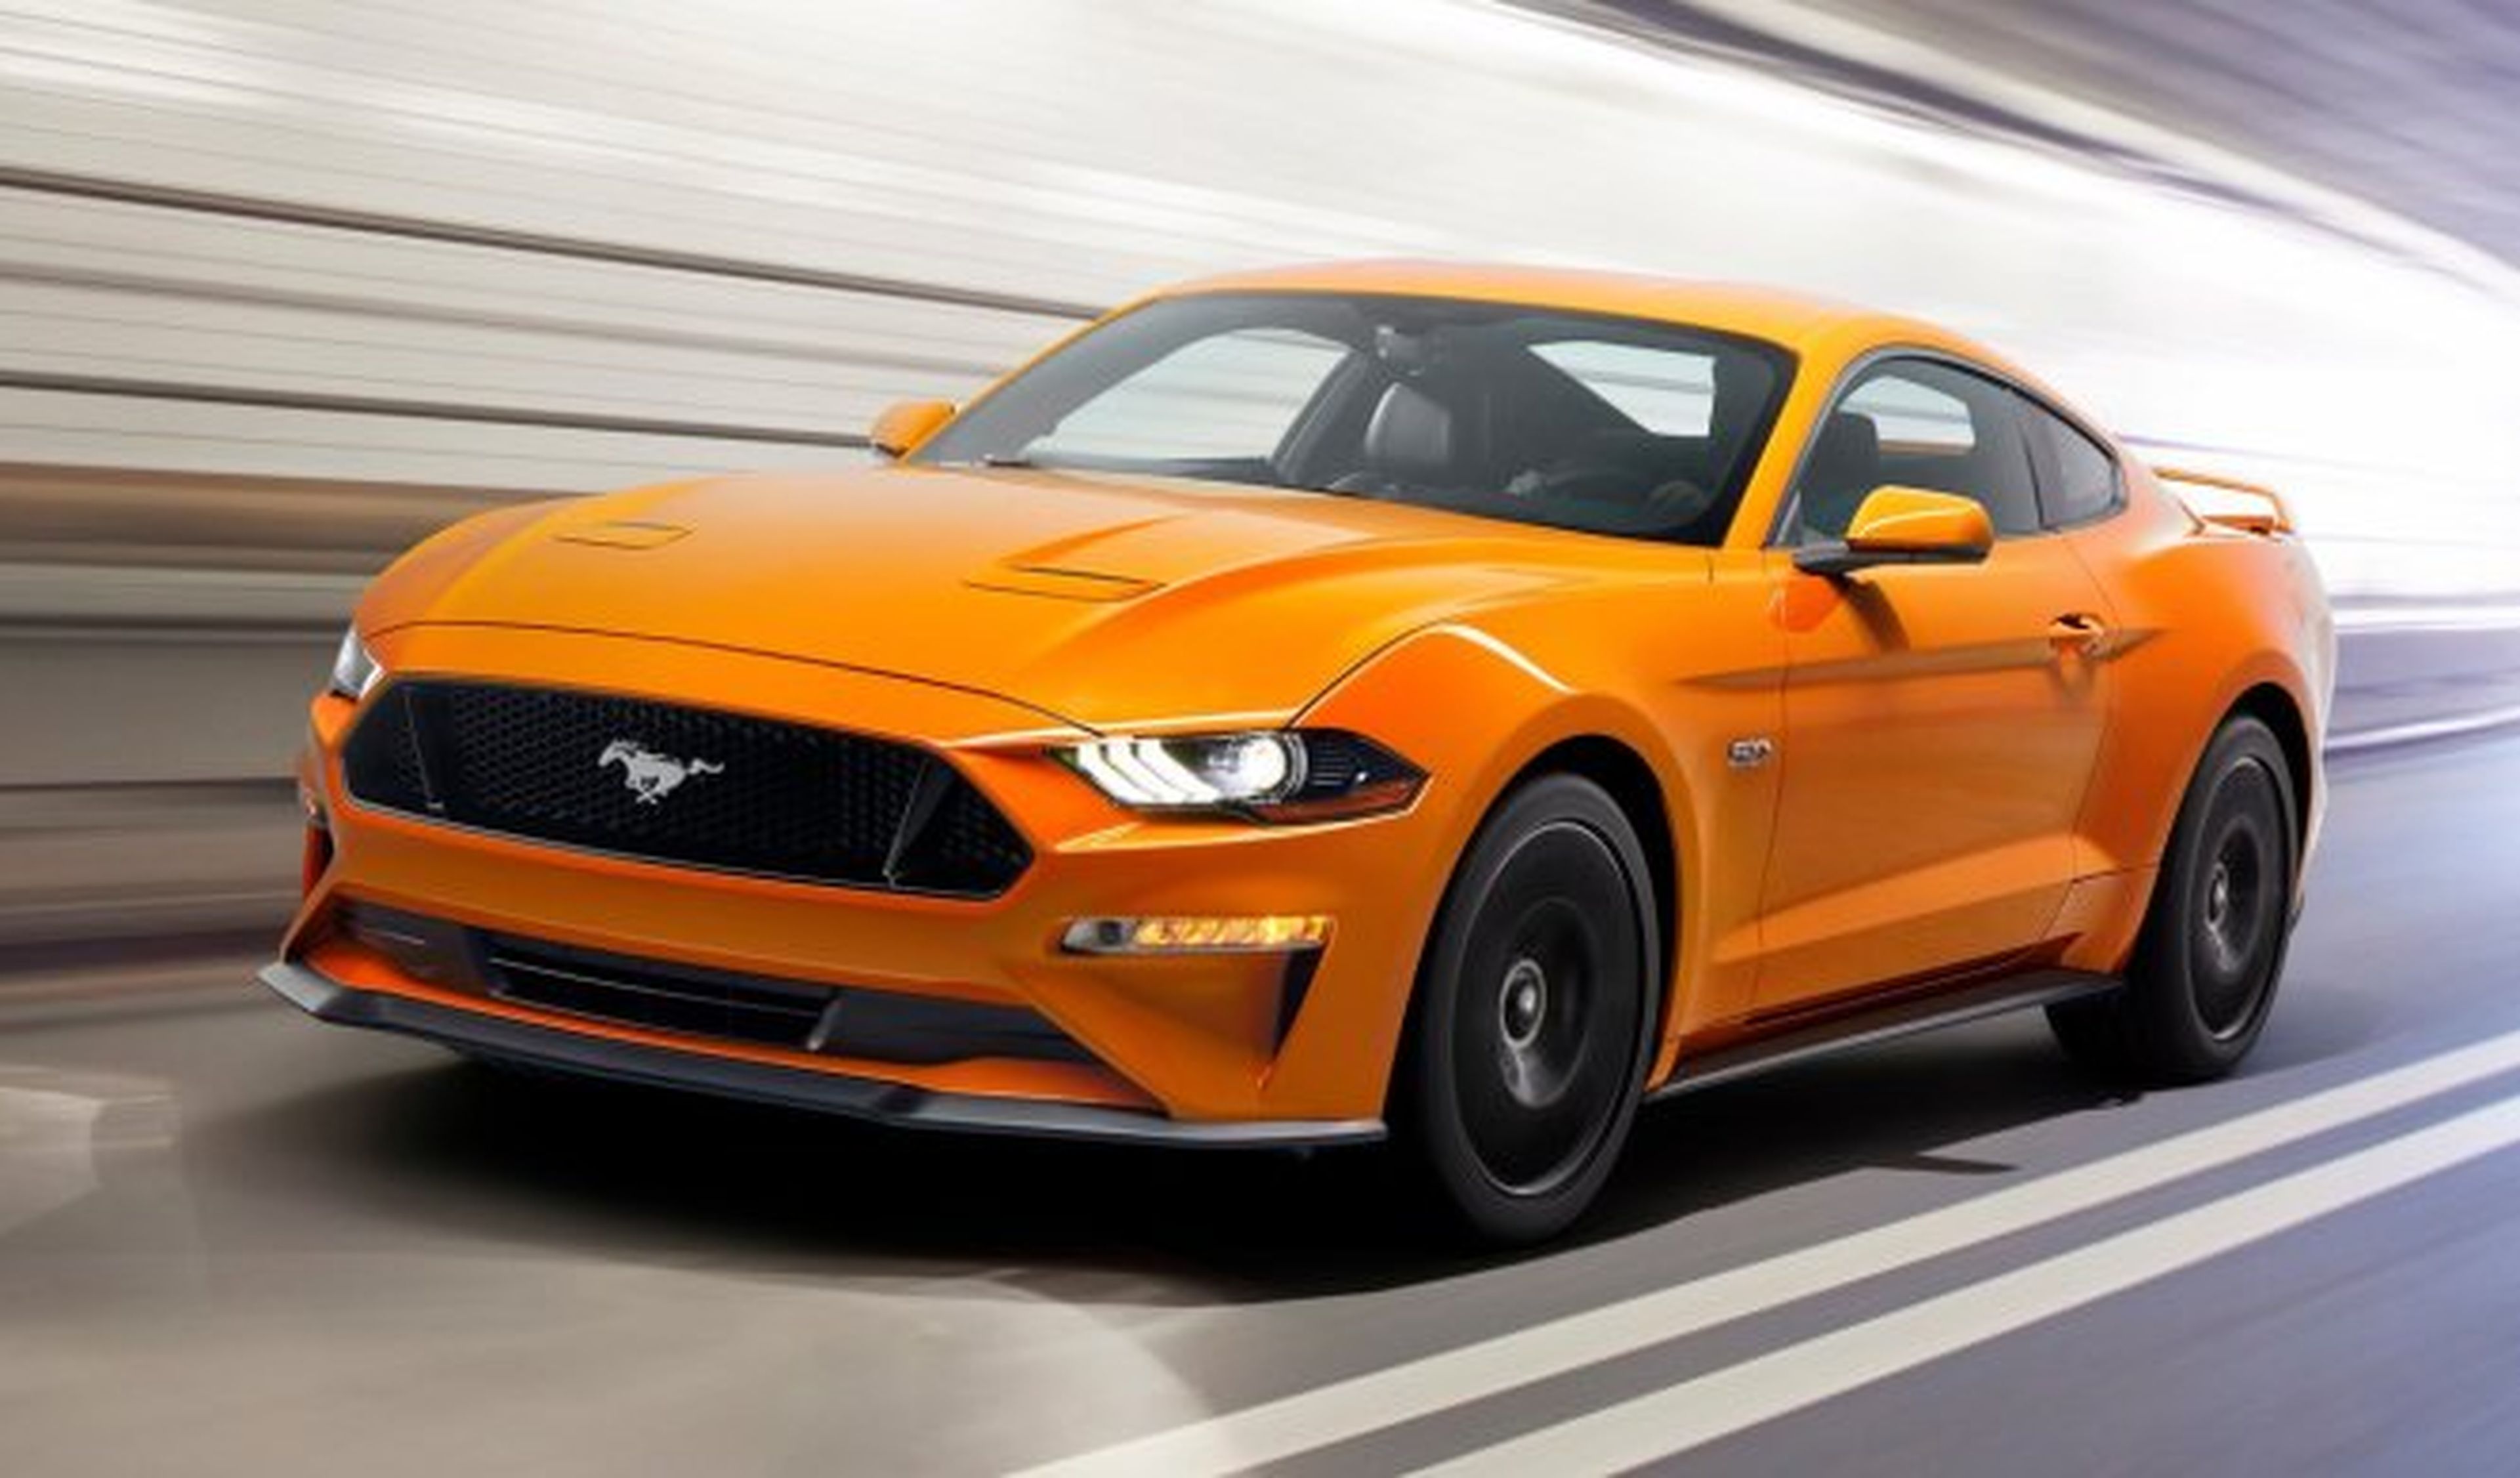 Precios del Ford Mustang 2017: desde 39.950 euros